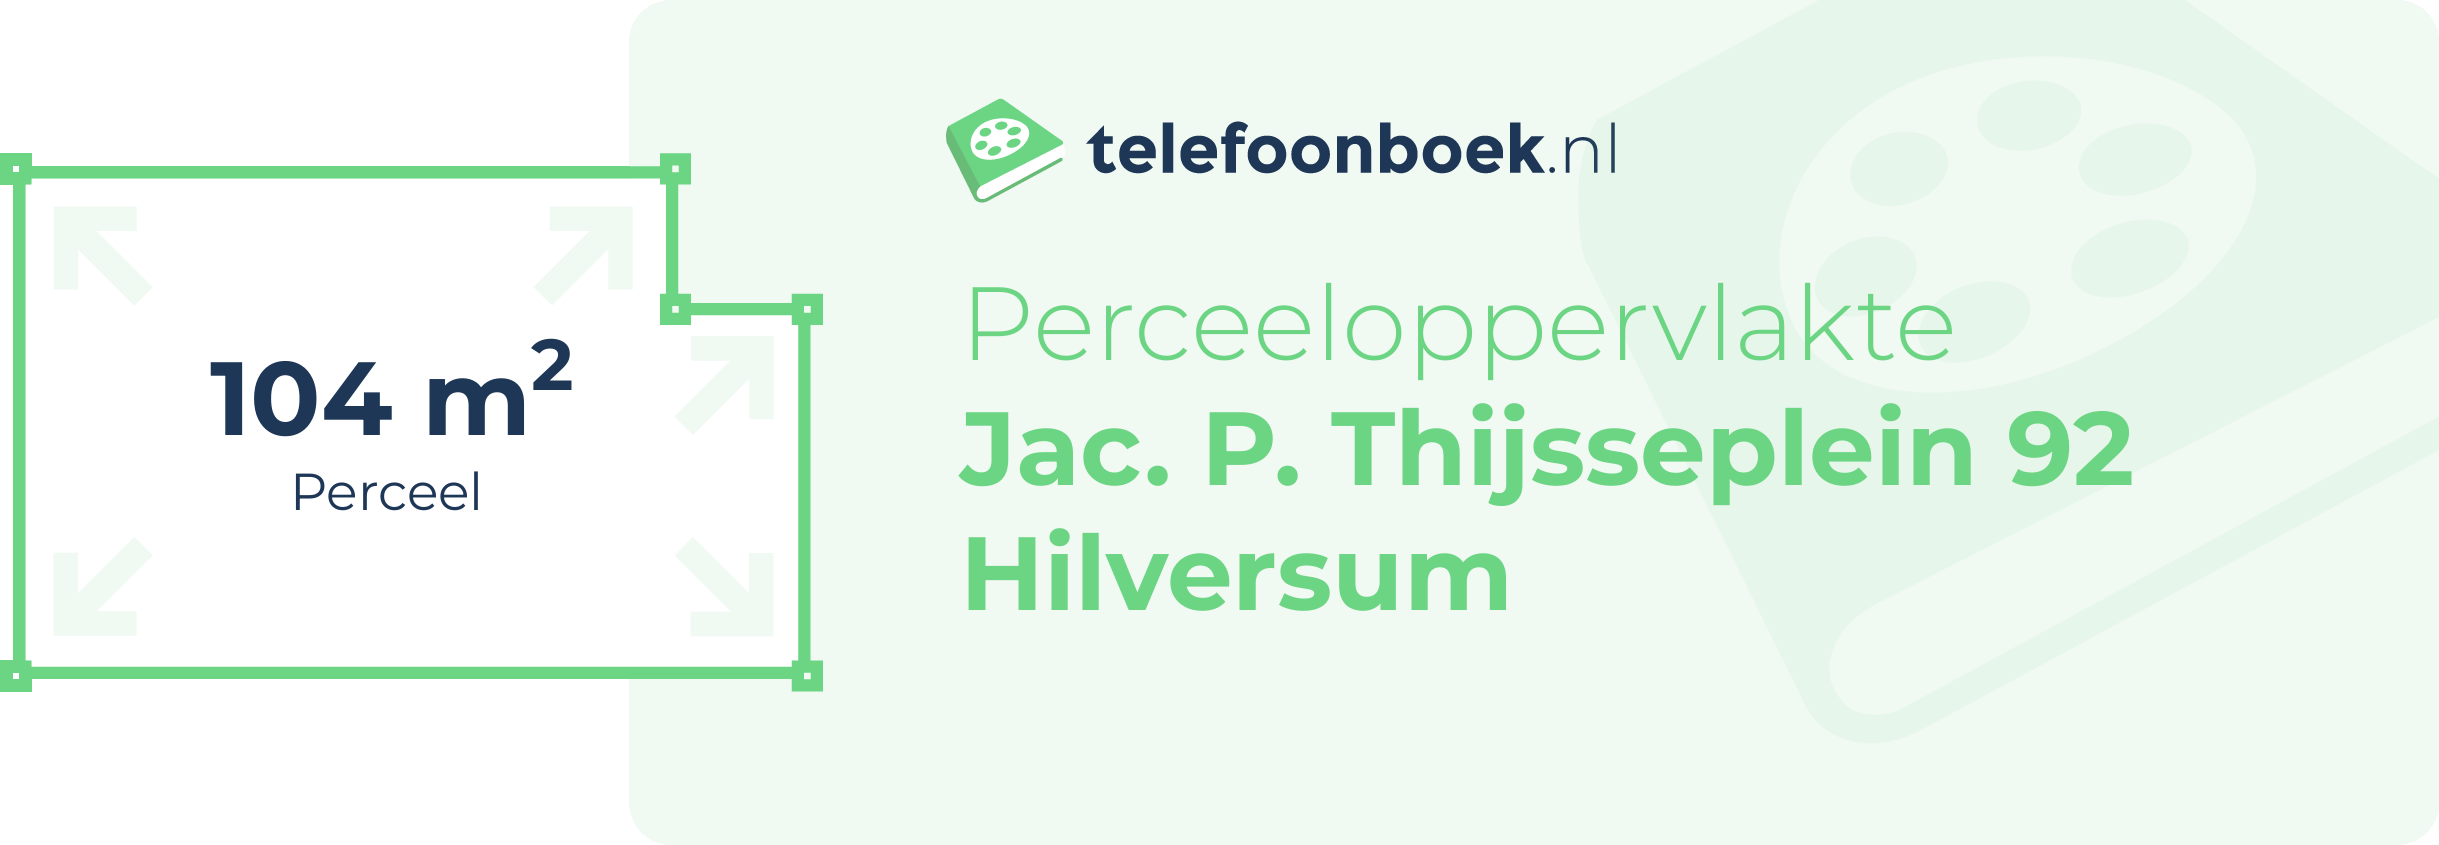 Perceeloppervlakte Jac. P. Thijsseplein 92 Hilversum